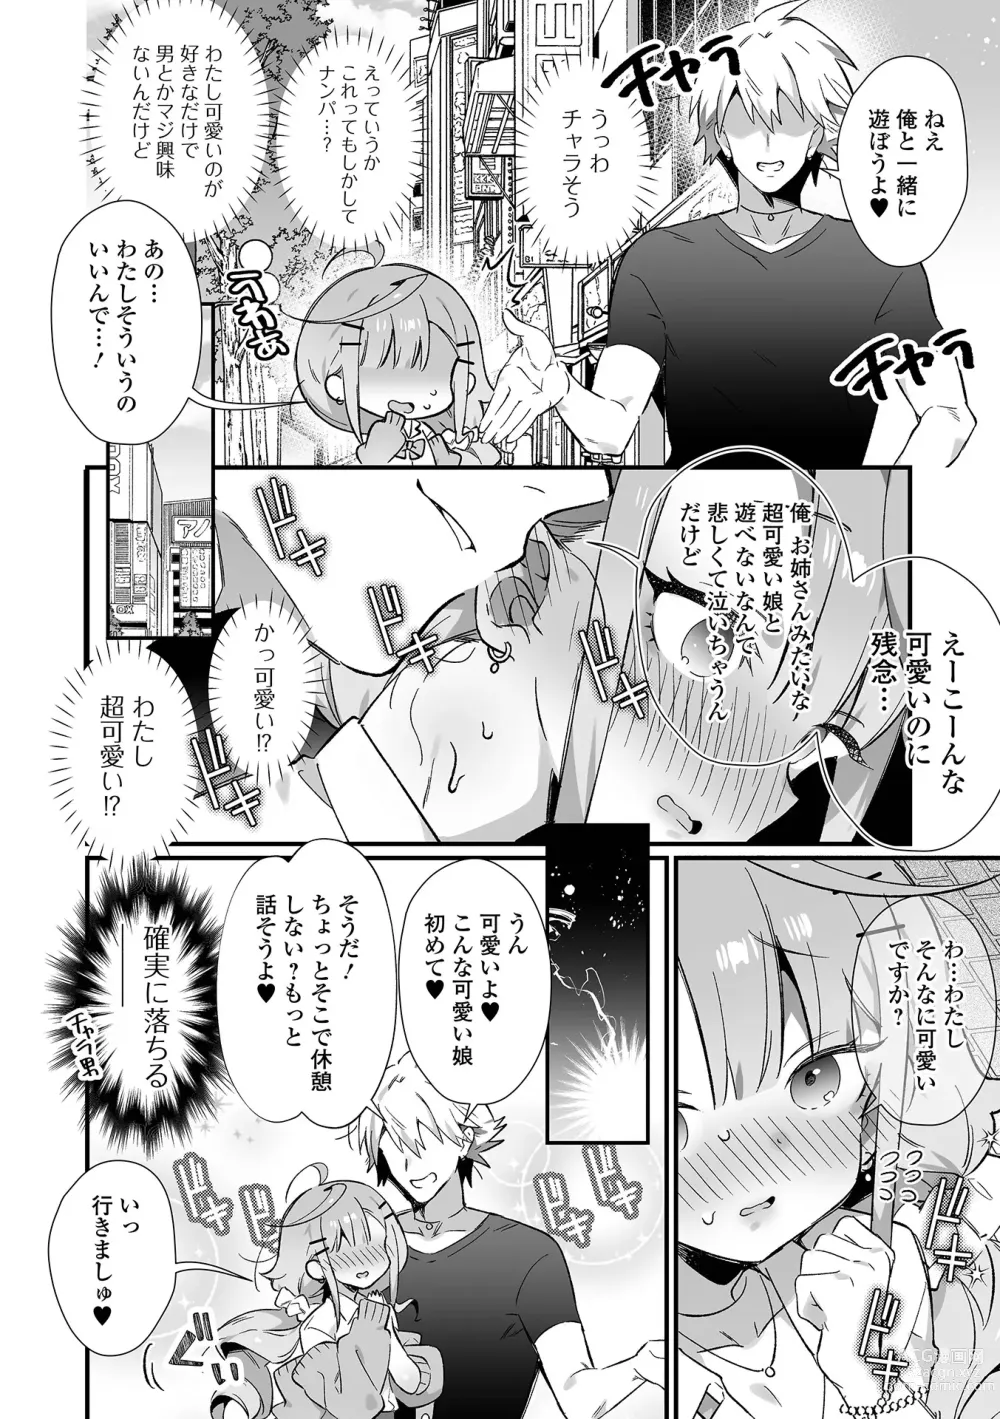 Page 4 of manga Gekkan Web Otoko no Ko-llection! S Vol. 86